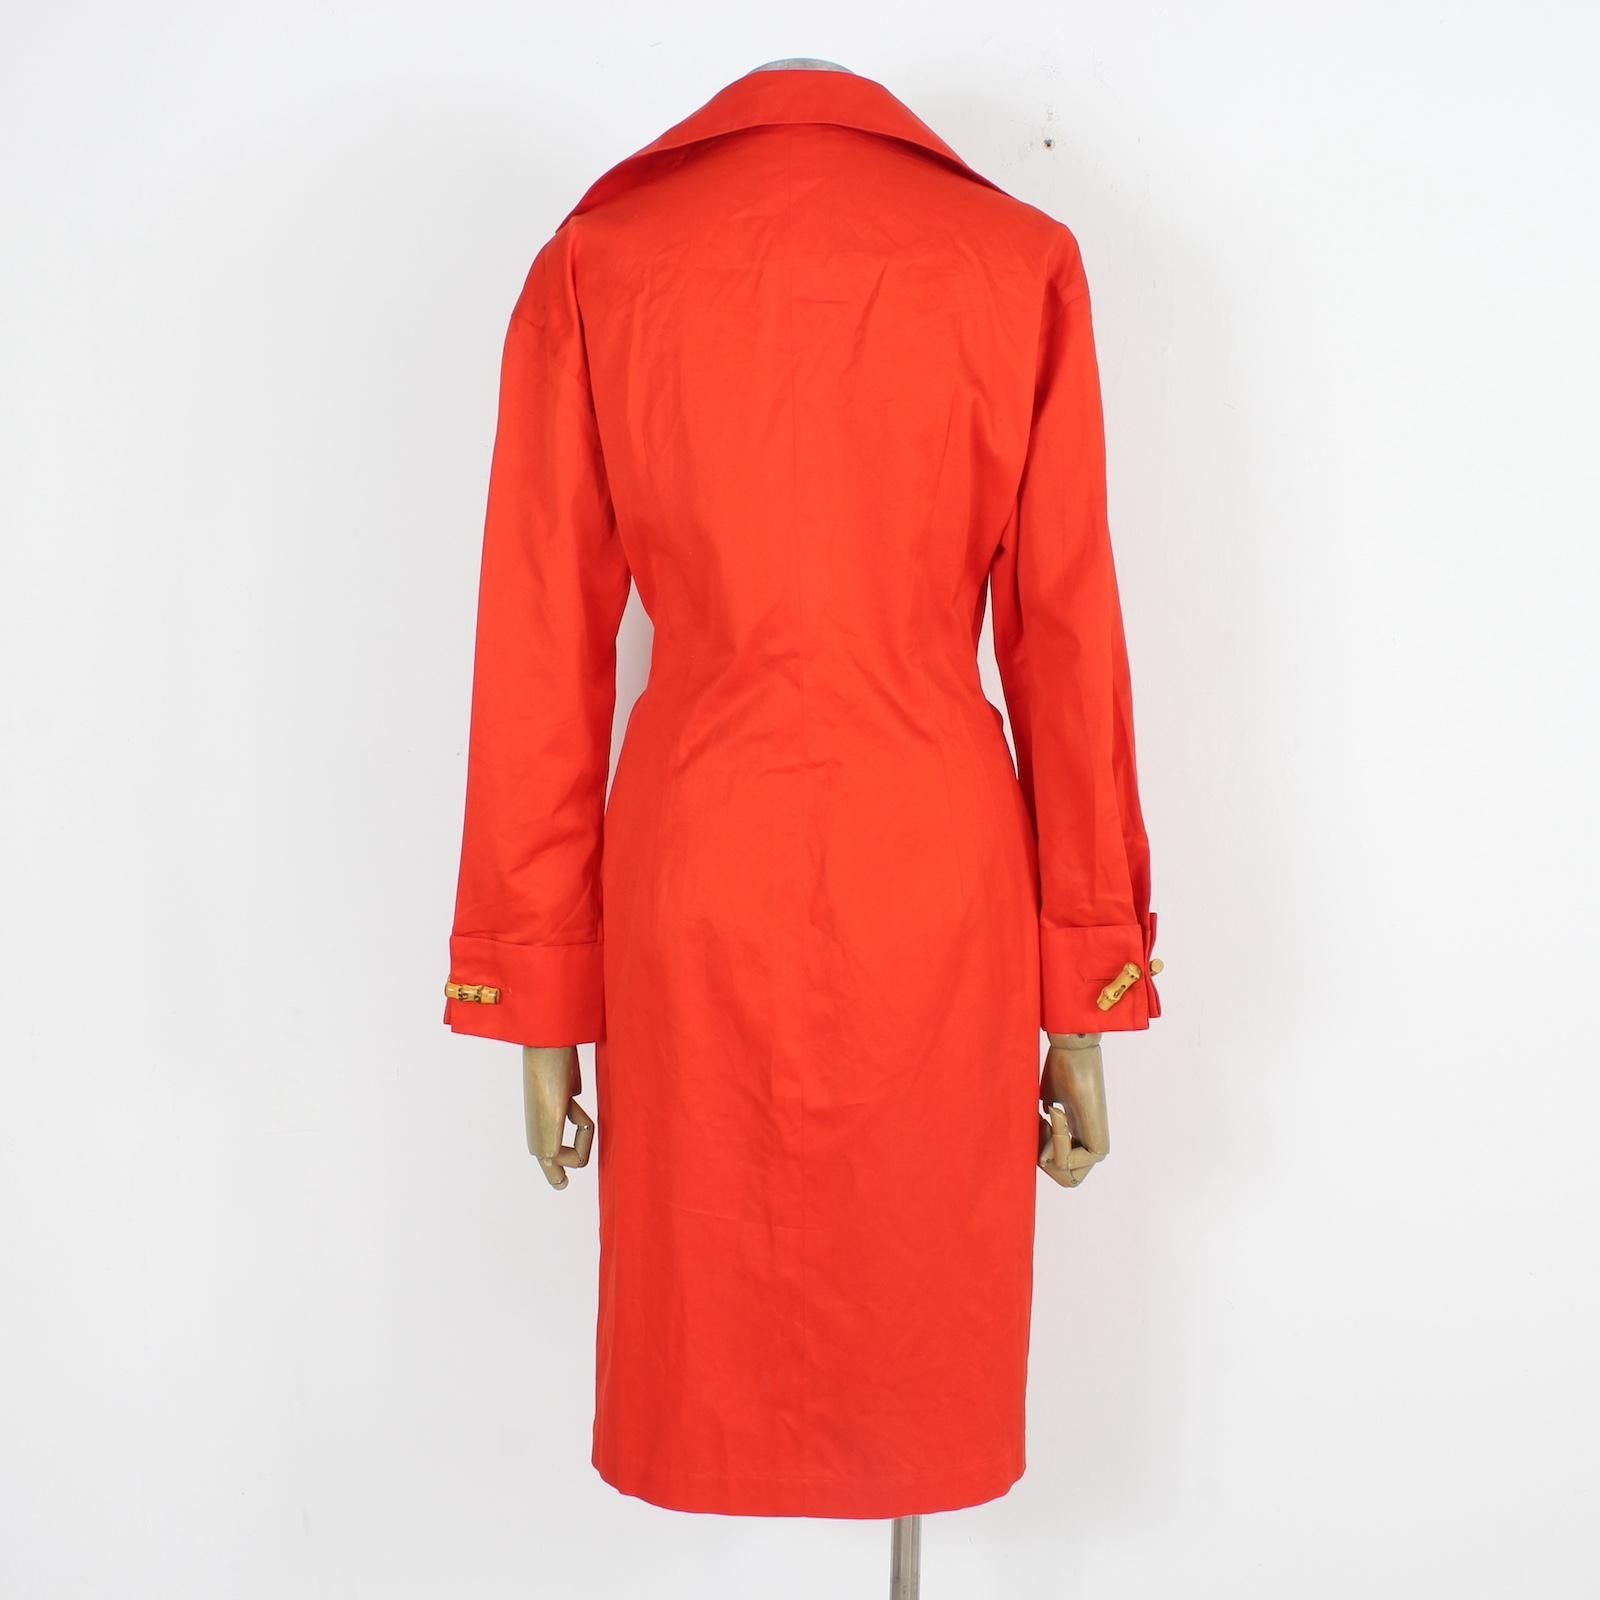 Genny elegantes Vintage-Kleid aus den 90ern. Rote Farbe, Verschluss mit speziellen Froschknöpfen aus Holz. Tiefer V-Ausschnitt, der in der Taille mit einer verstellbaren Schleife geschlossen wird. Lange Ärmel mit zwei Holzfroschknöpfen. stoff aus